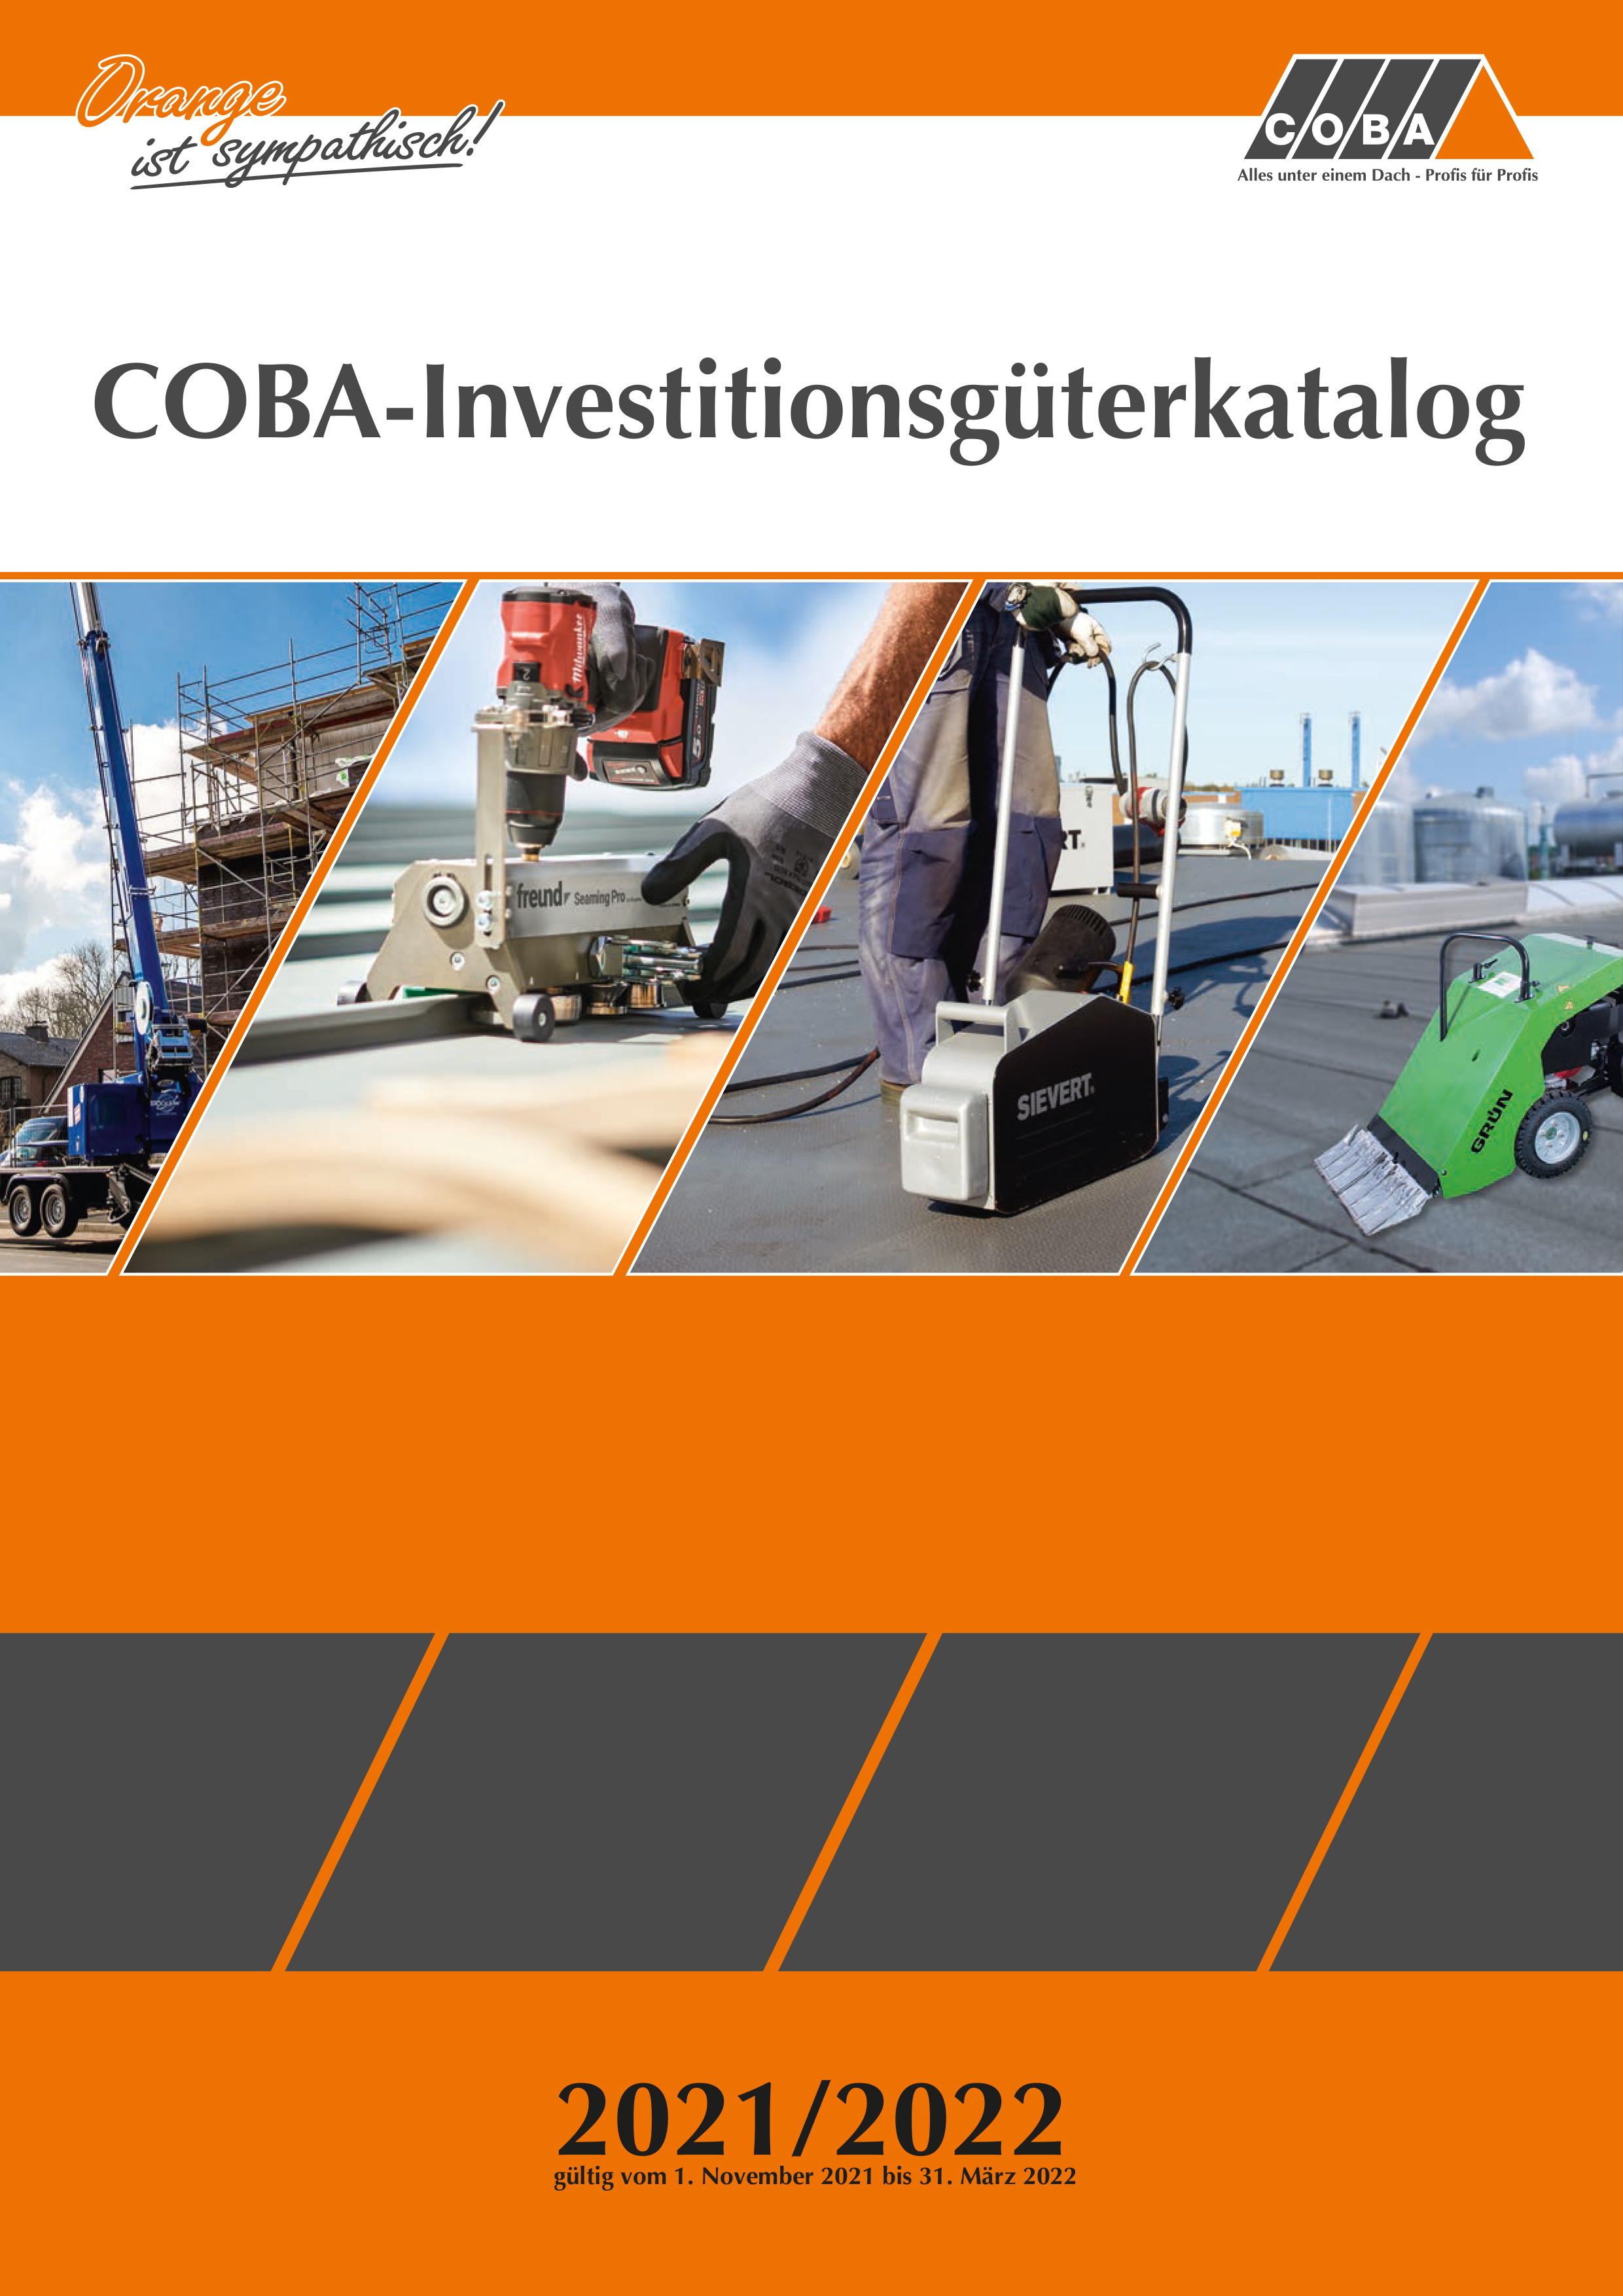 Der neue COBA-Investitionsgüterkatalog 2021/2022